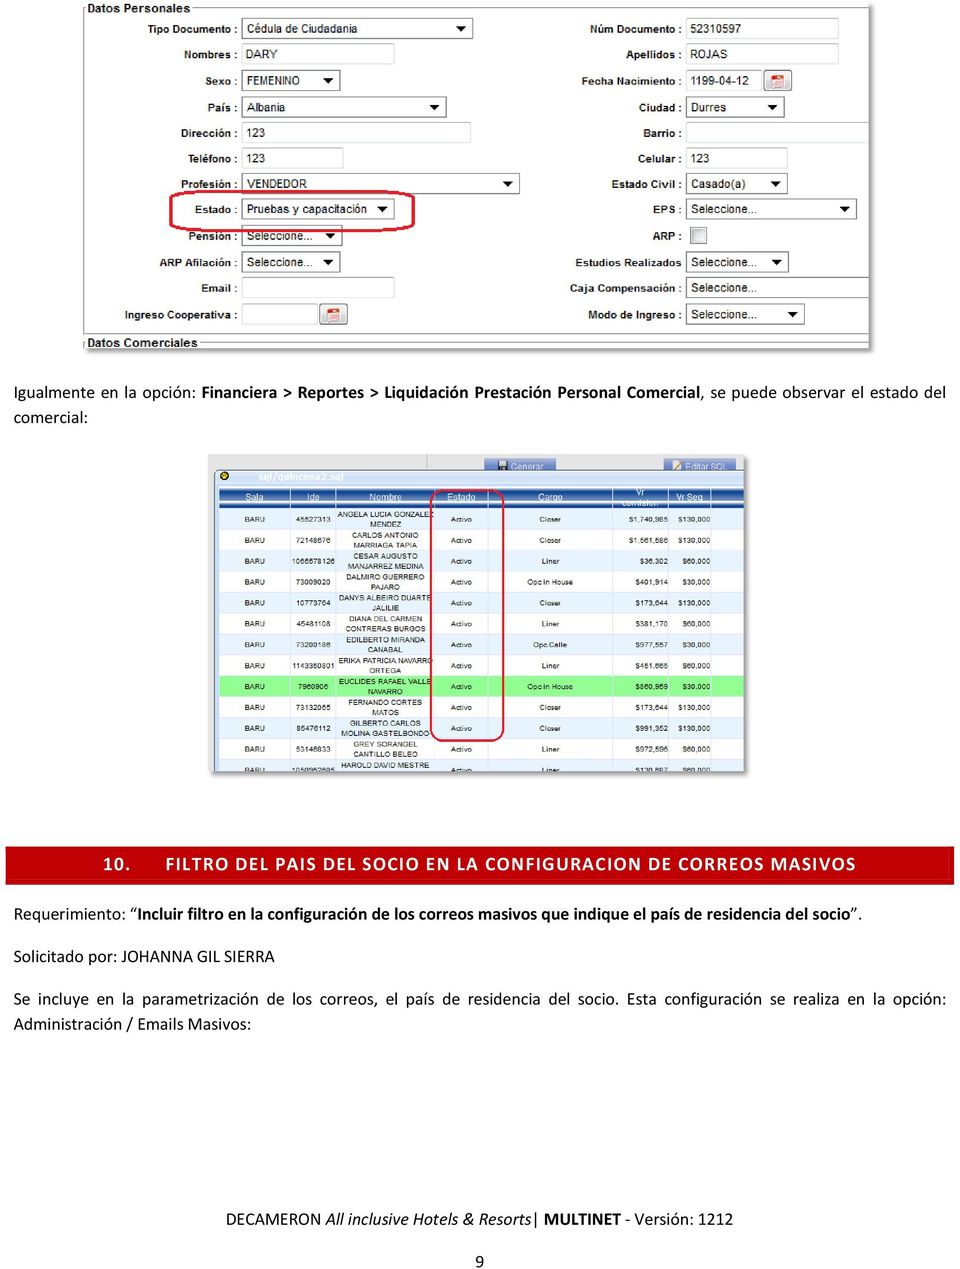 FILTRO DEL PAIS DEL SOCIO EN LA CONFIGURACION DE CORREOS MASIVOS Requerimiento: Incluir filtro en la configuración de los correos